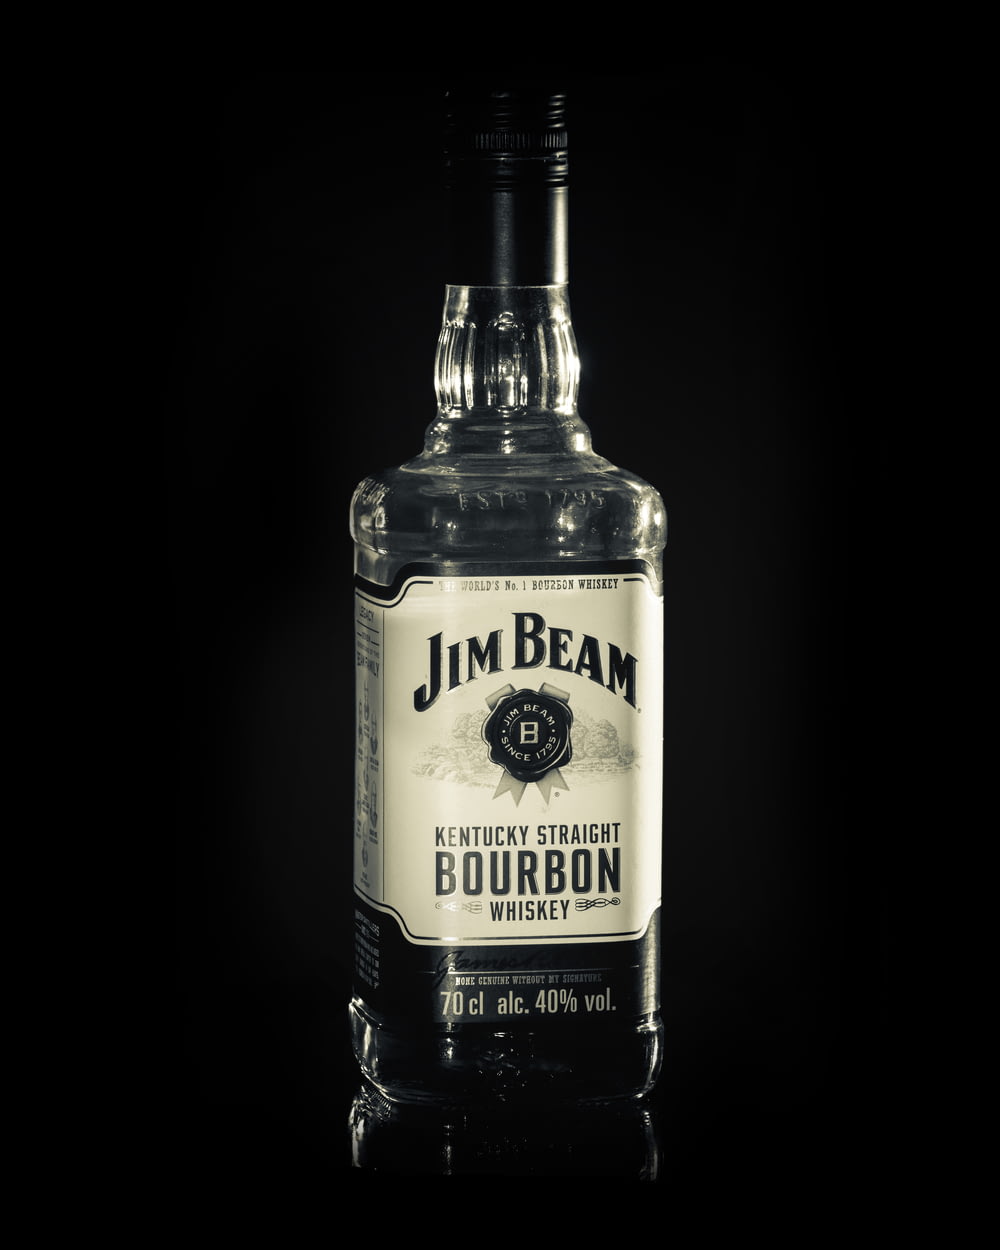 Jim Beam Bourbon bottle